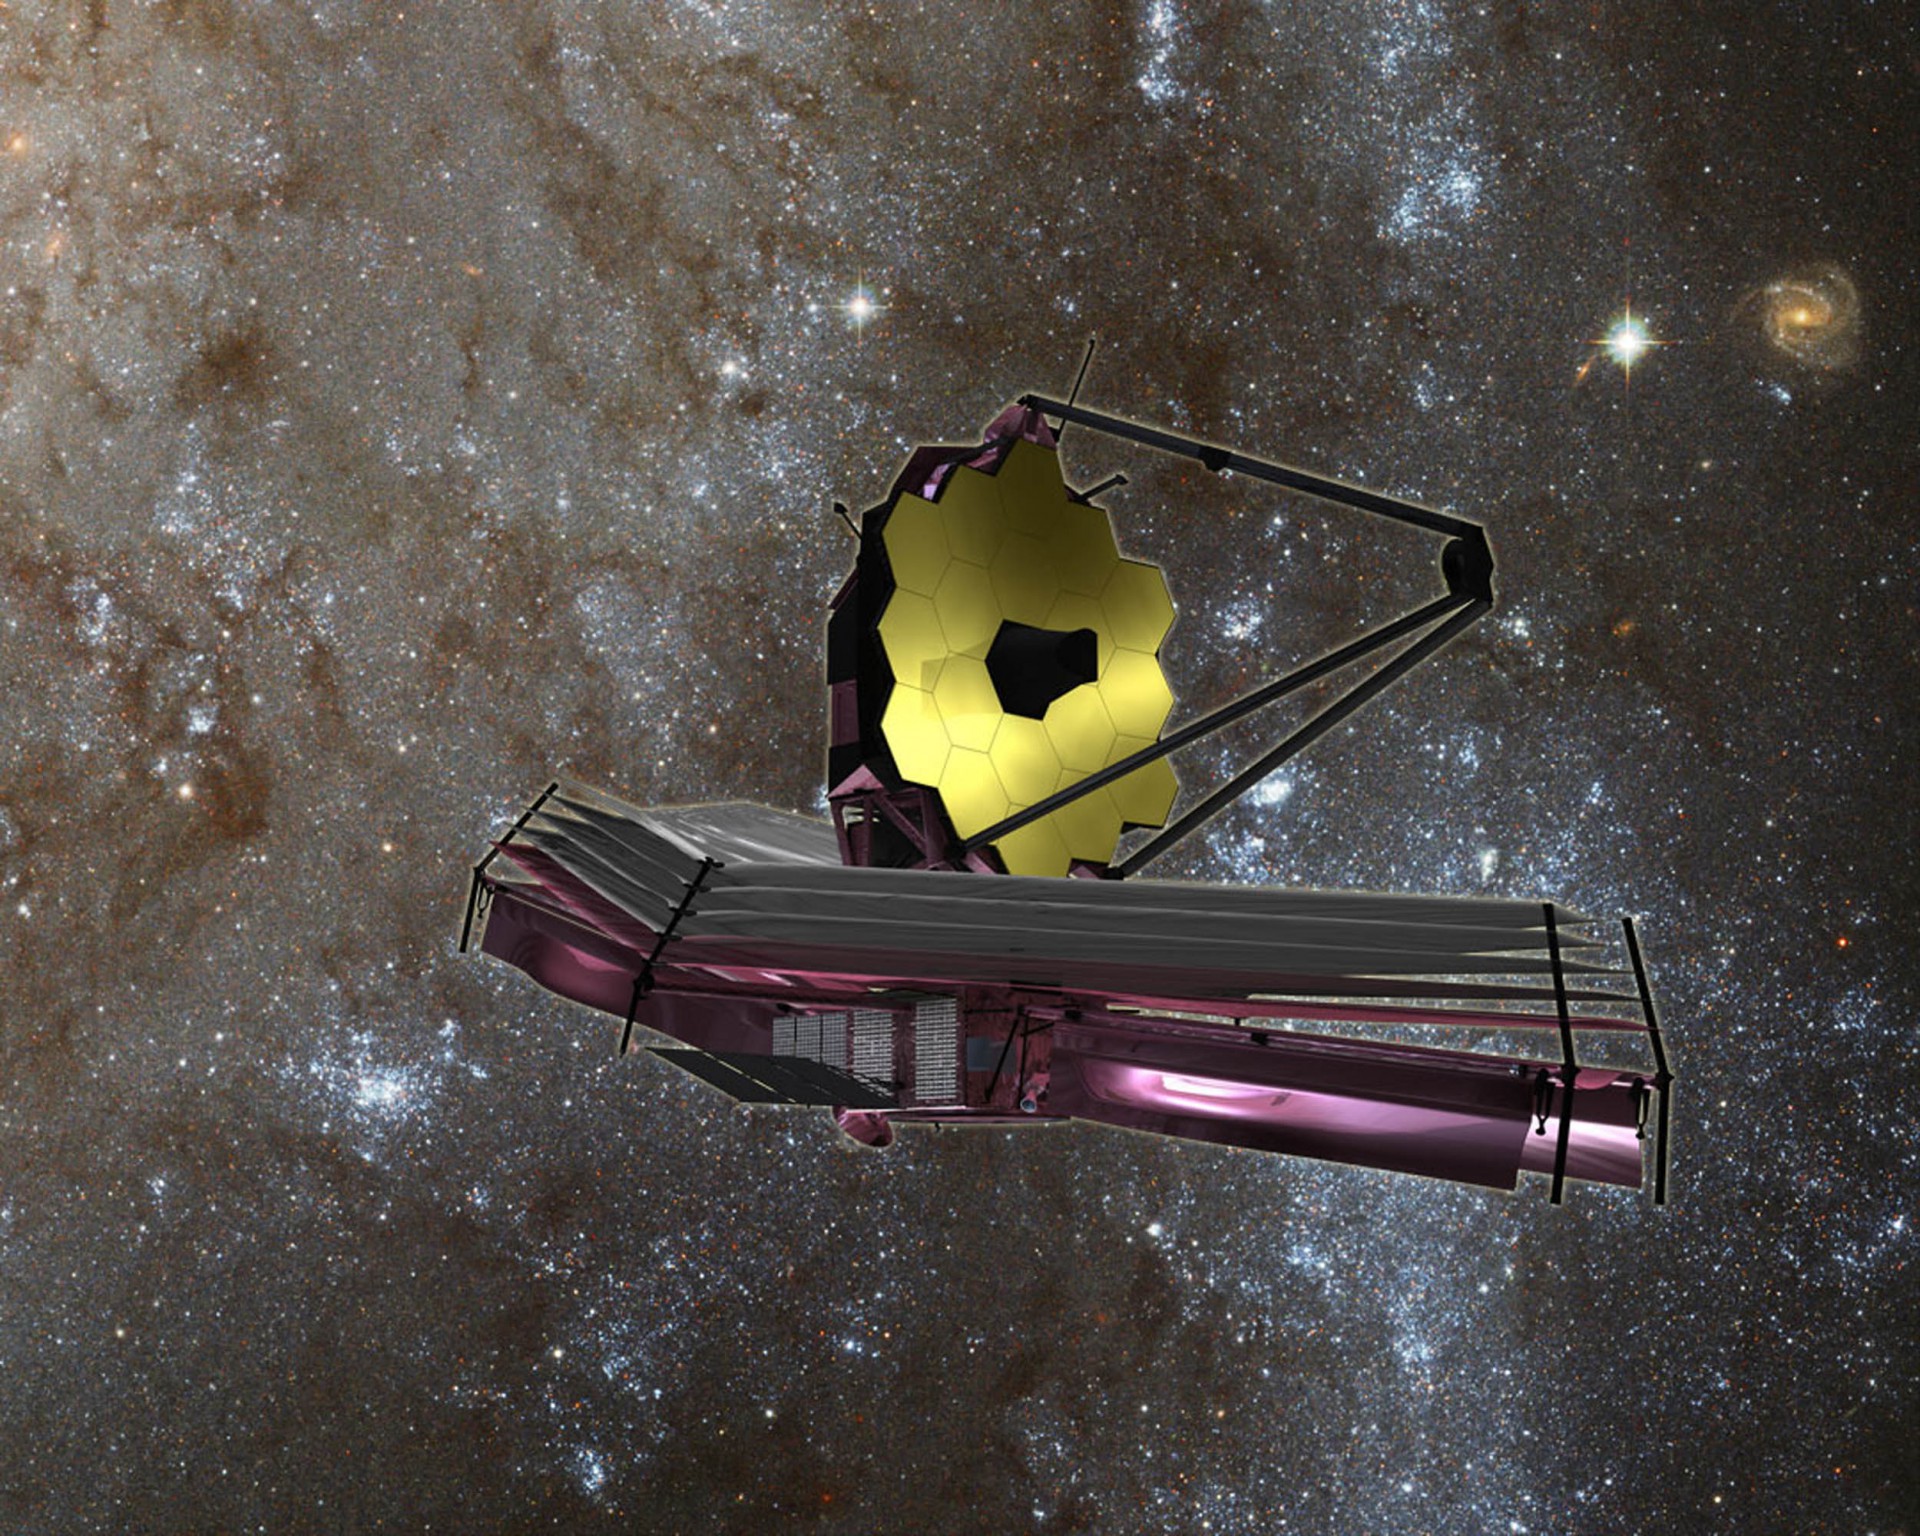 Foto de arquivo tirada em 30 de agosto de 2007 mostra o Telescópio Espacial James Webb (JWST), um grande telescópio infravermelho com um primário de 6,5 metros (Foto: HANDOUT / NASA / AFP)